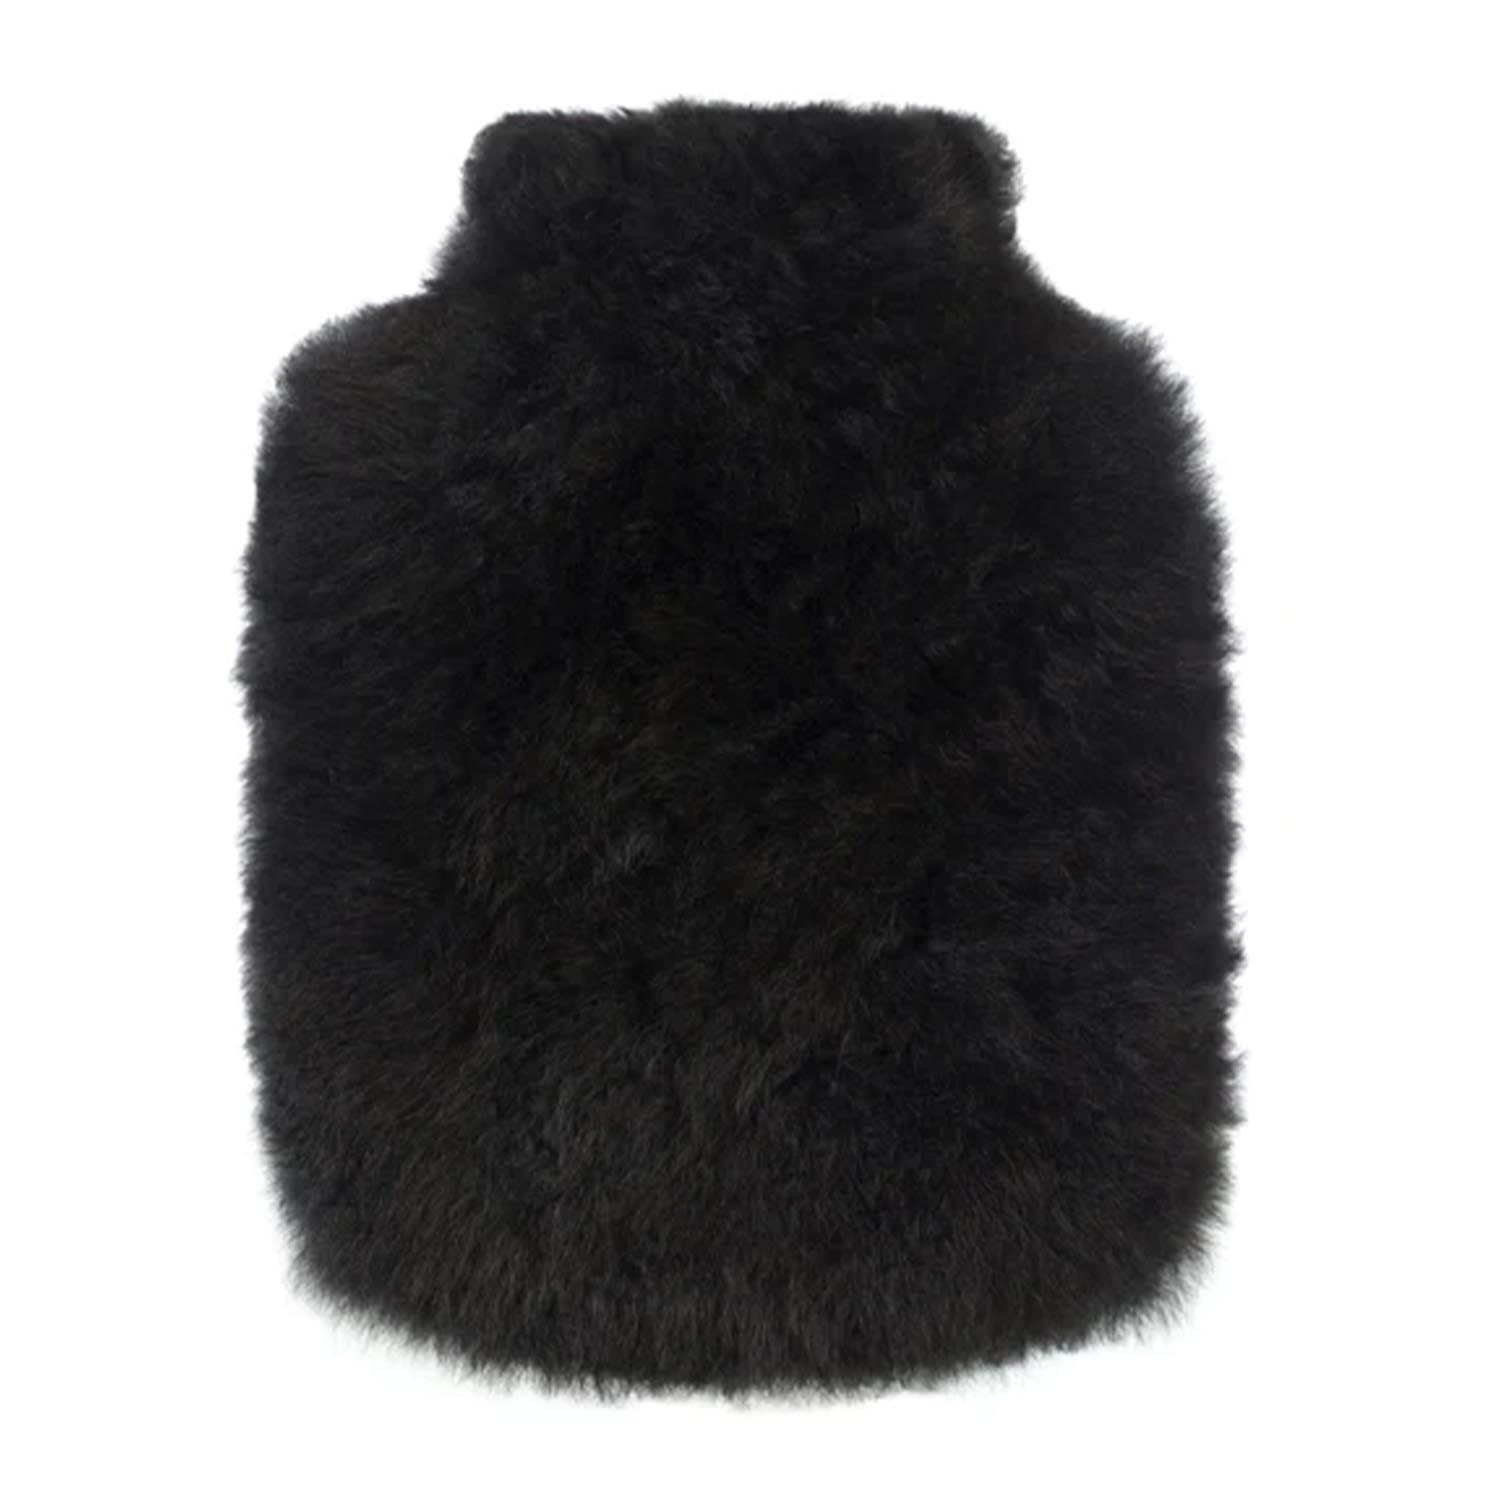 Wärmeflasche Calmo, Farbe jet black, Grösse regular (1,8l) von Weich Couture Alpaca